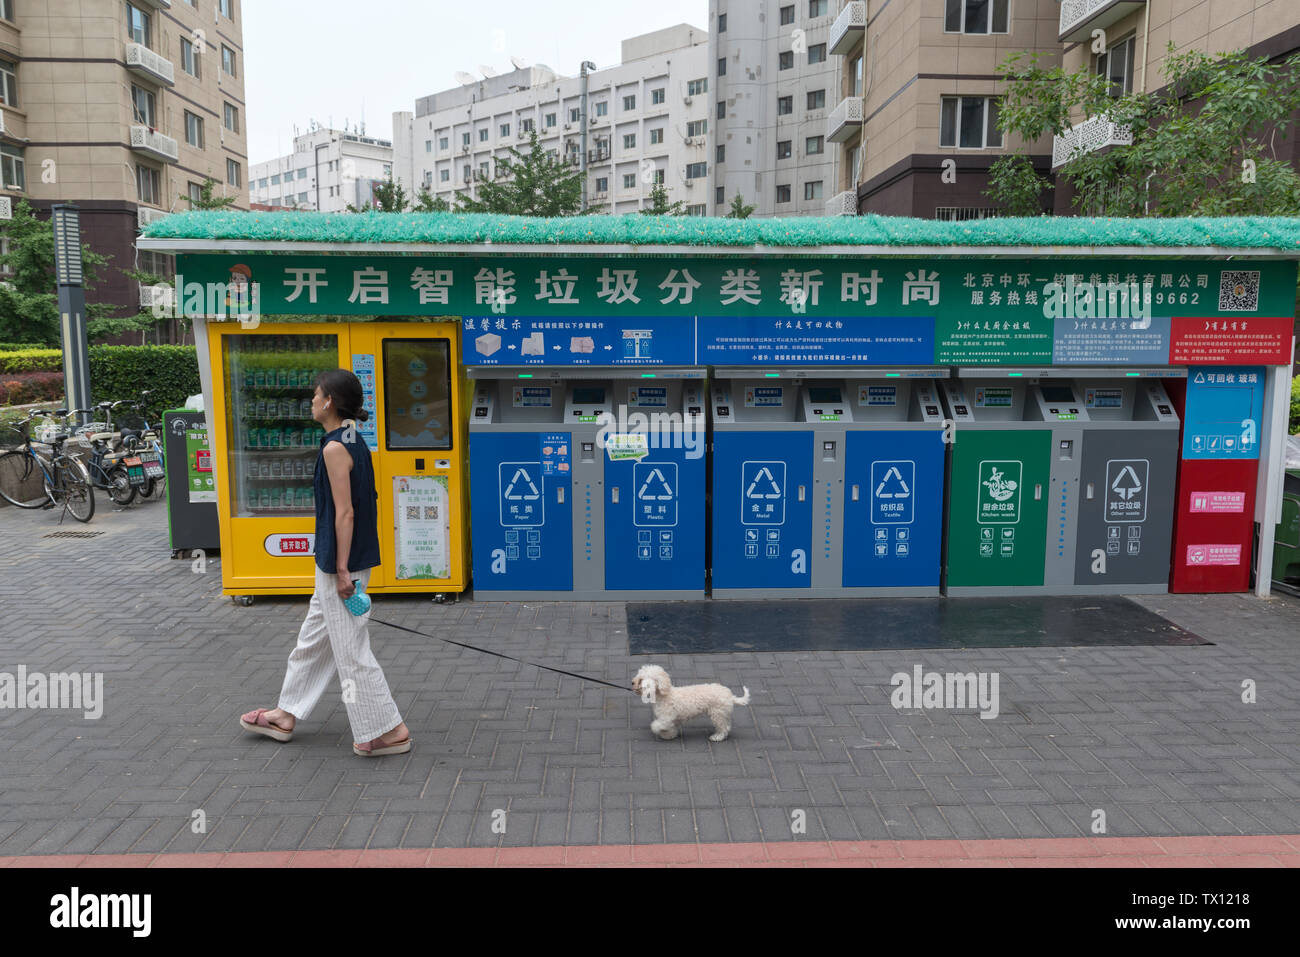 Eine Frau geht ein Hund hinter dem smart Müll - Sortieren von Mülleimern in einem Wohngebiet Compound in Peking, China. Jun 23, 2019 Stockfoto